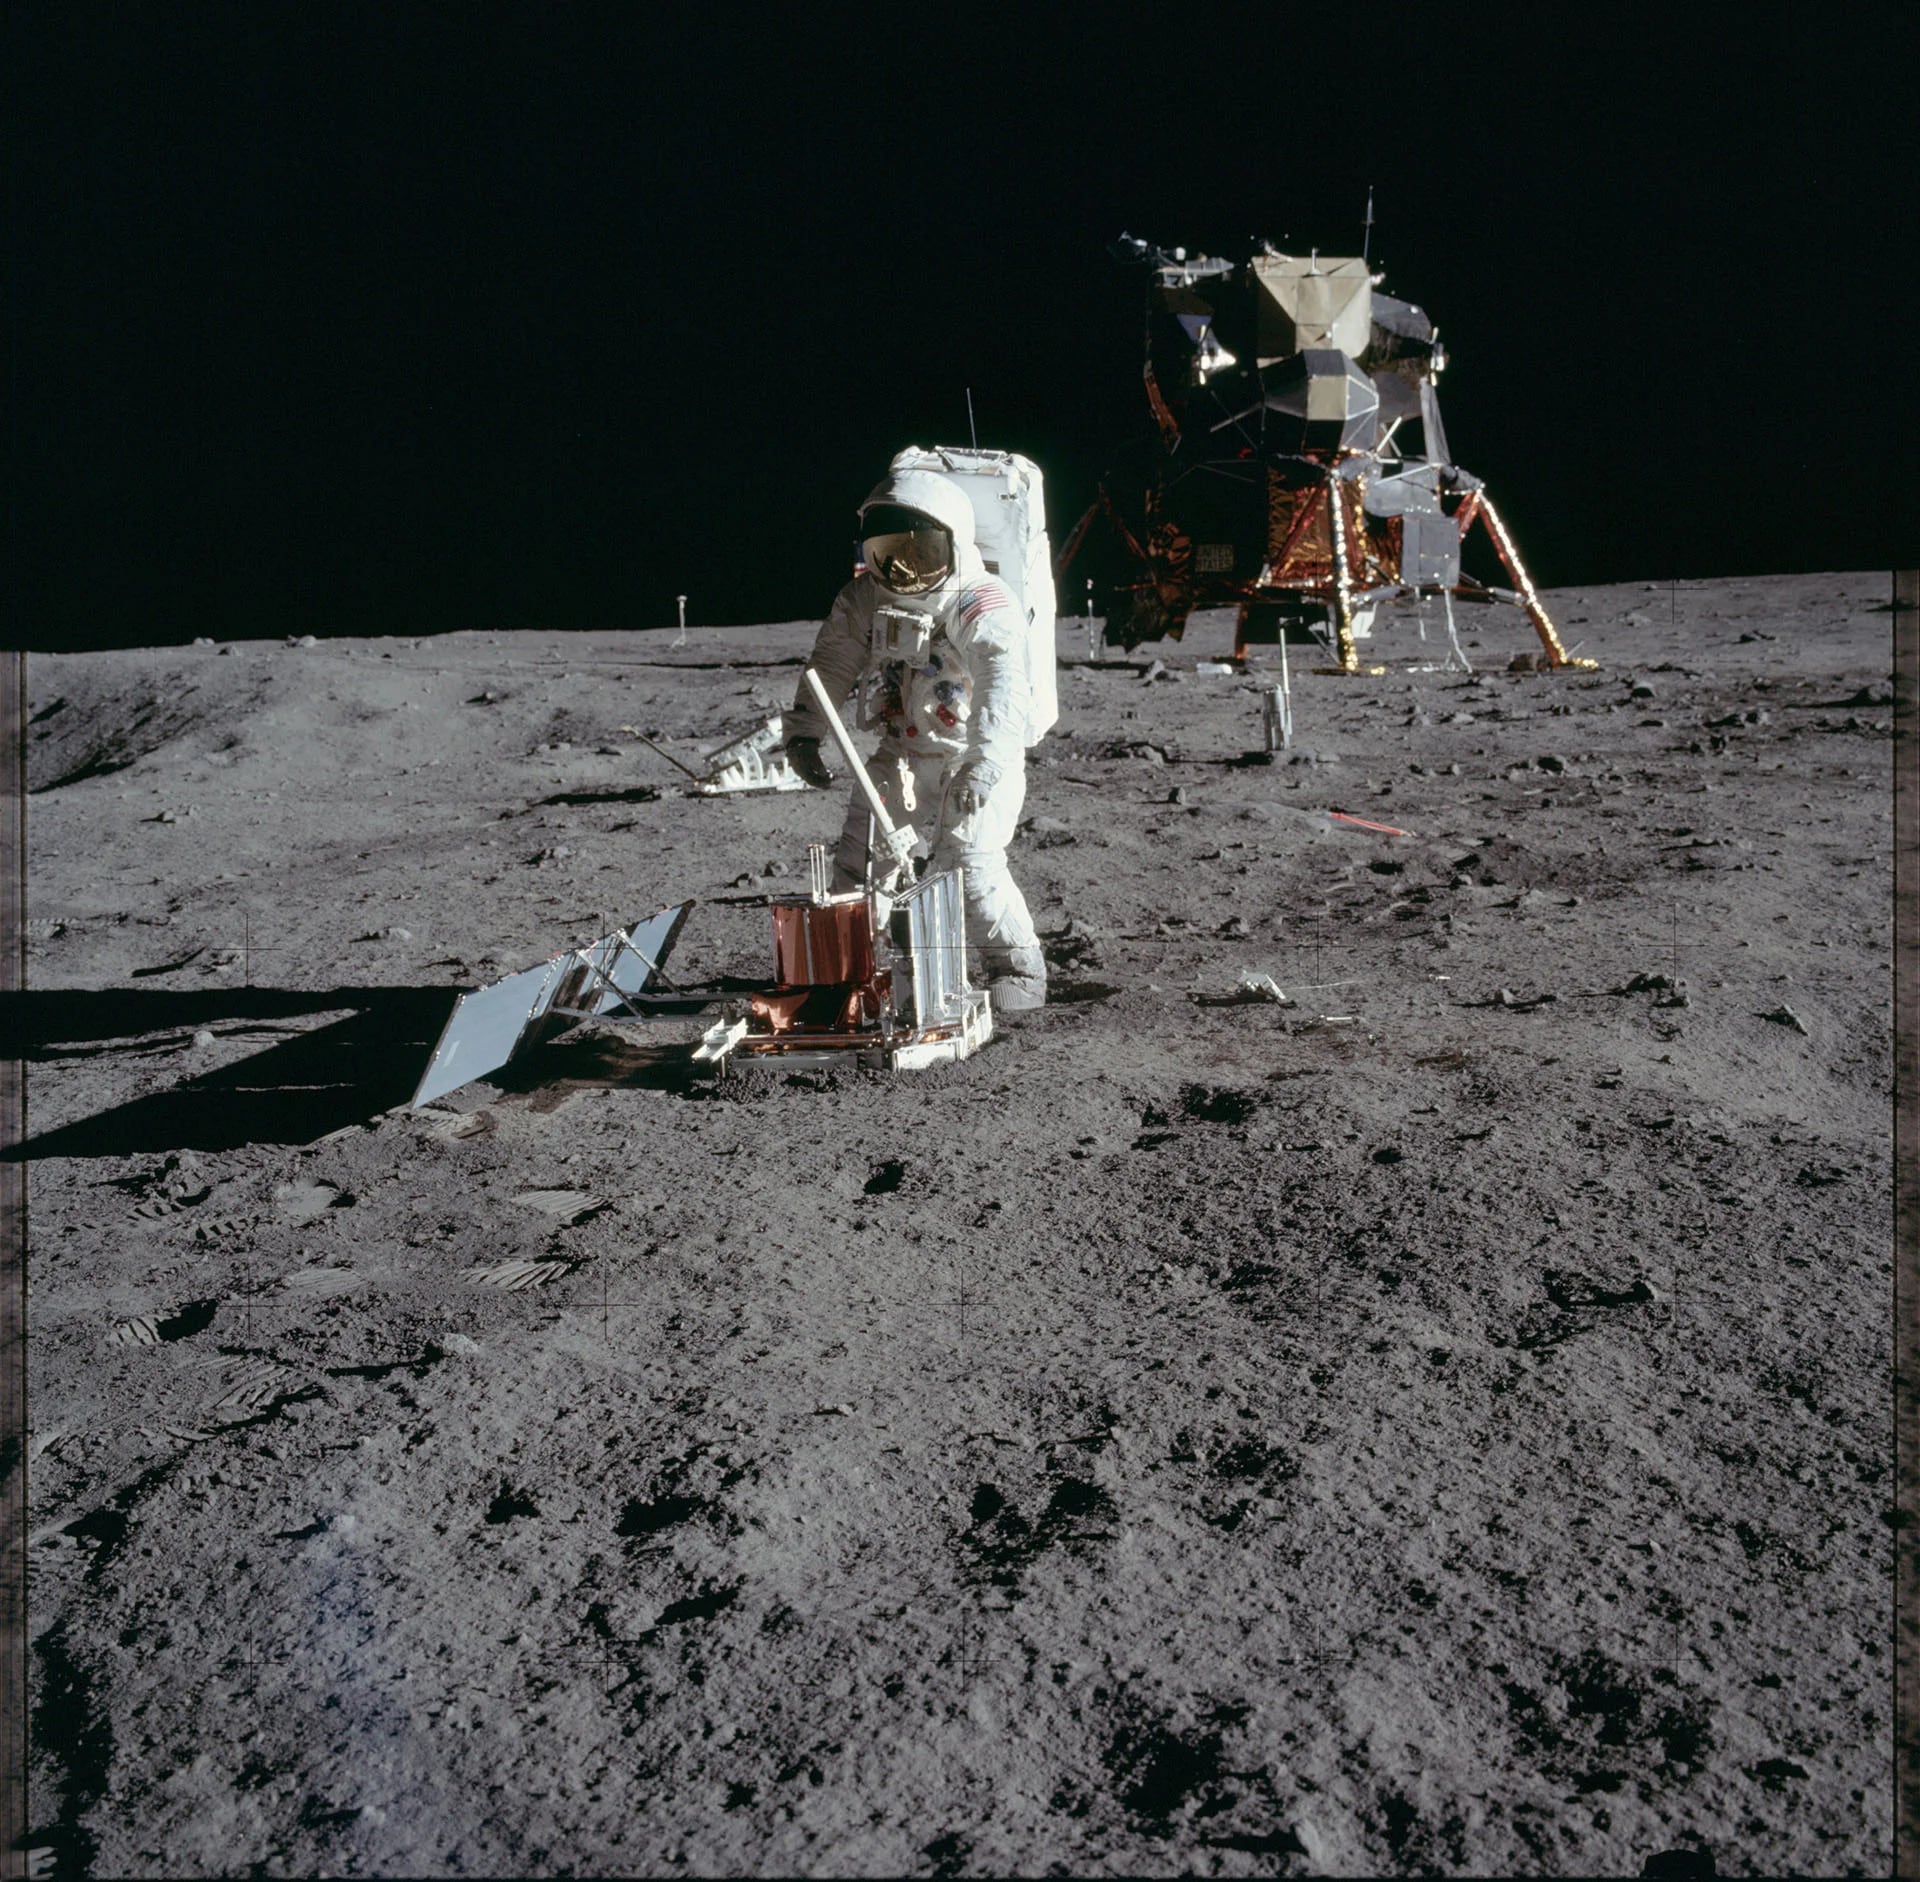 Una vista del módulo lunar “Eagle” posado sobre la superficie de la luna (Reuters)